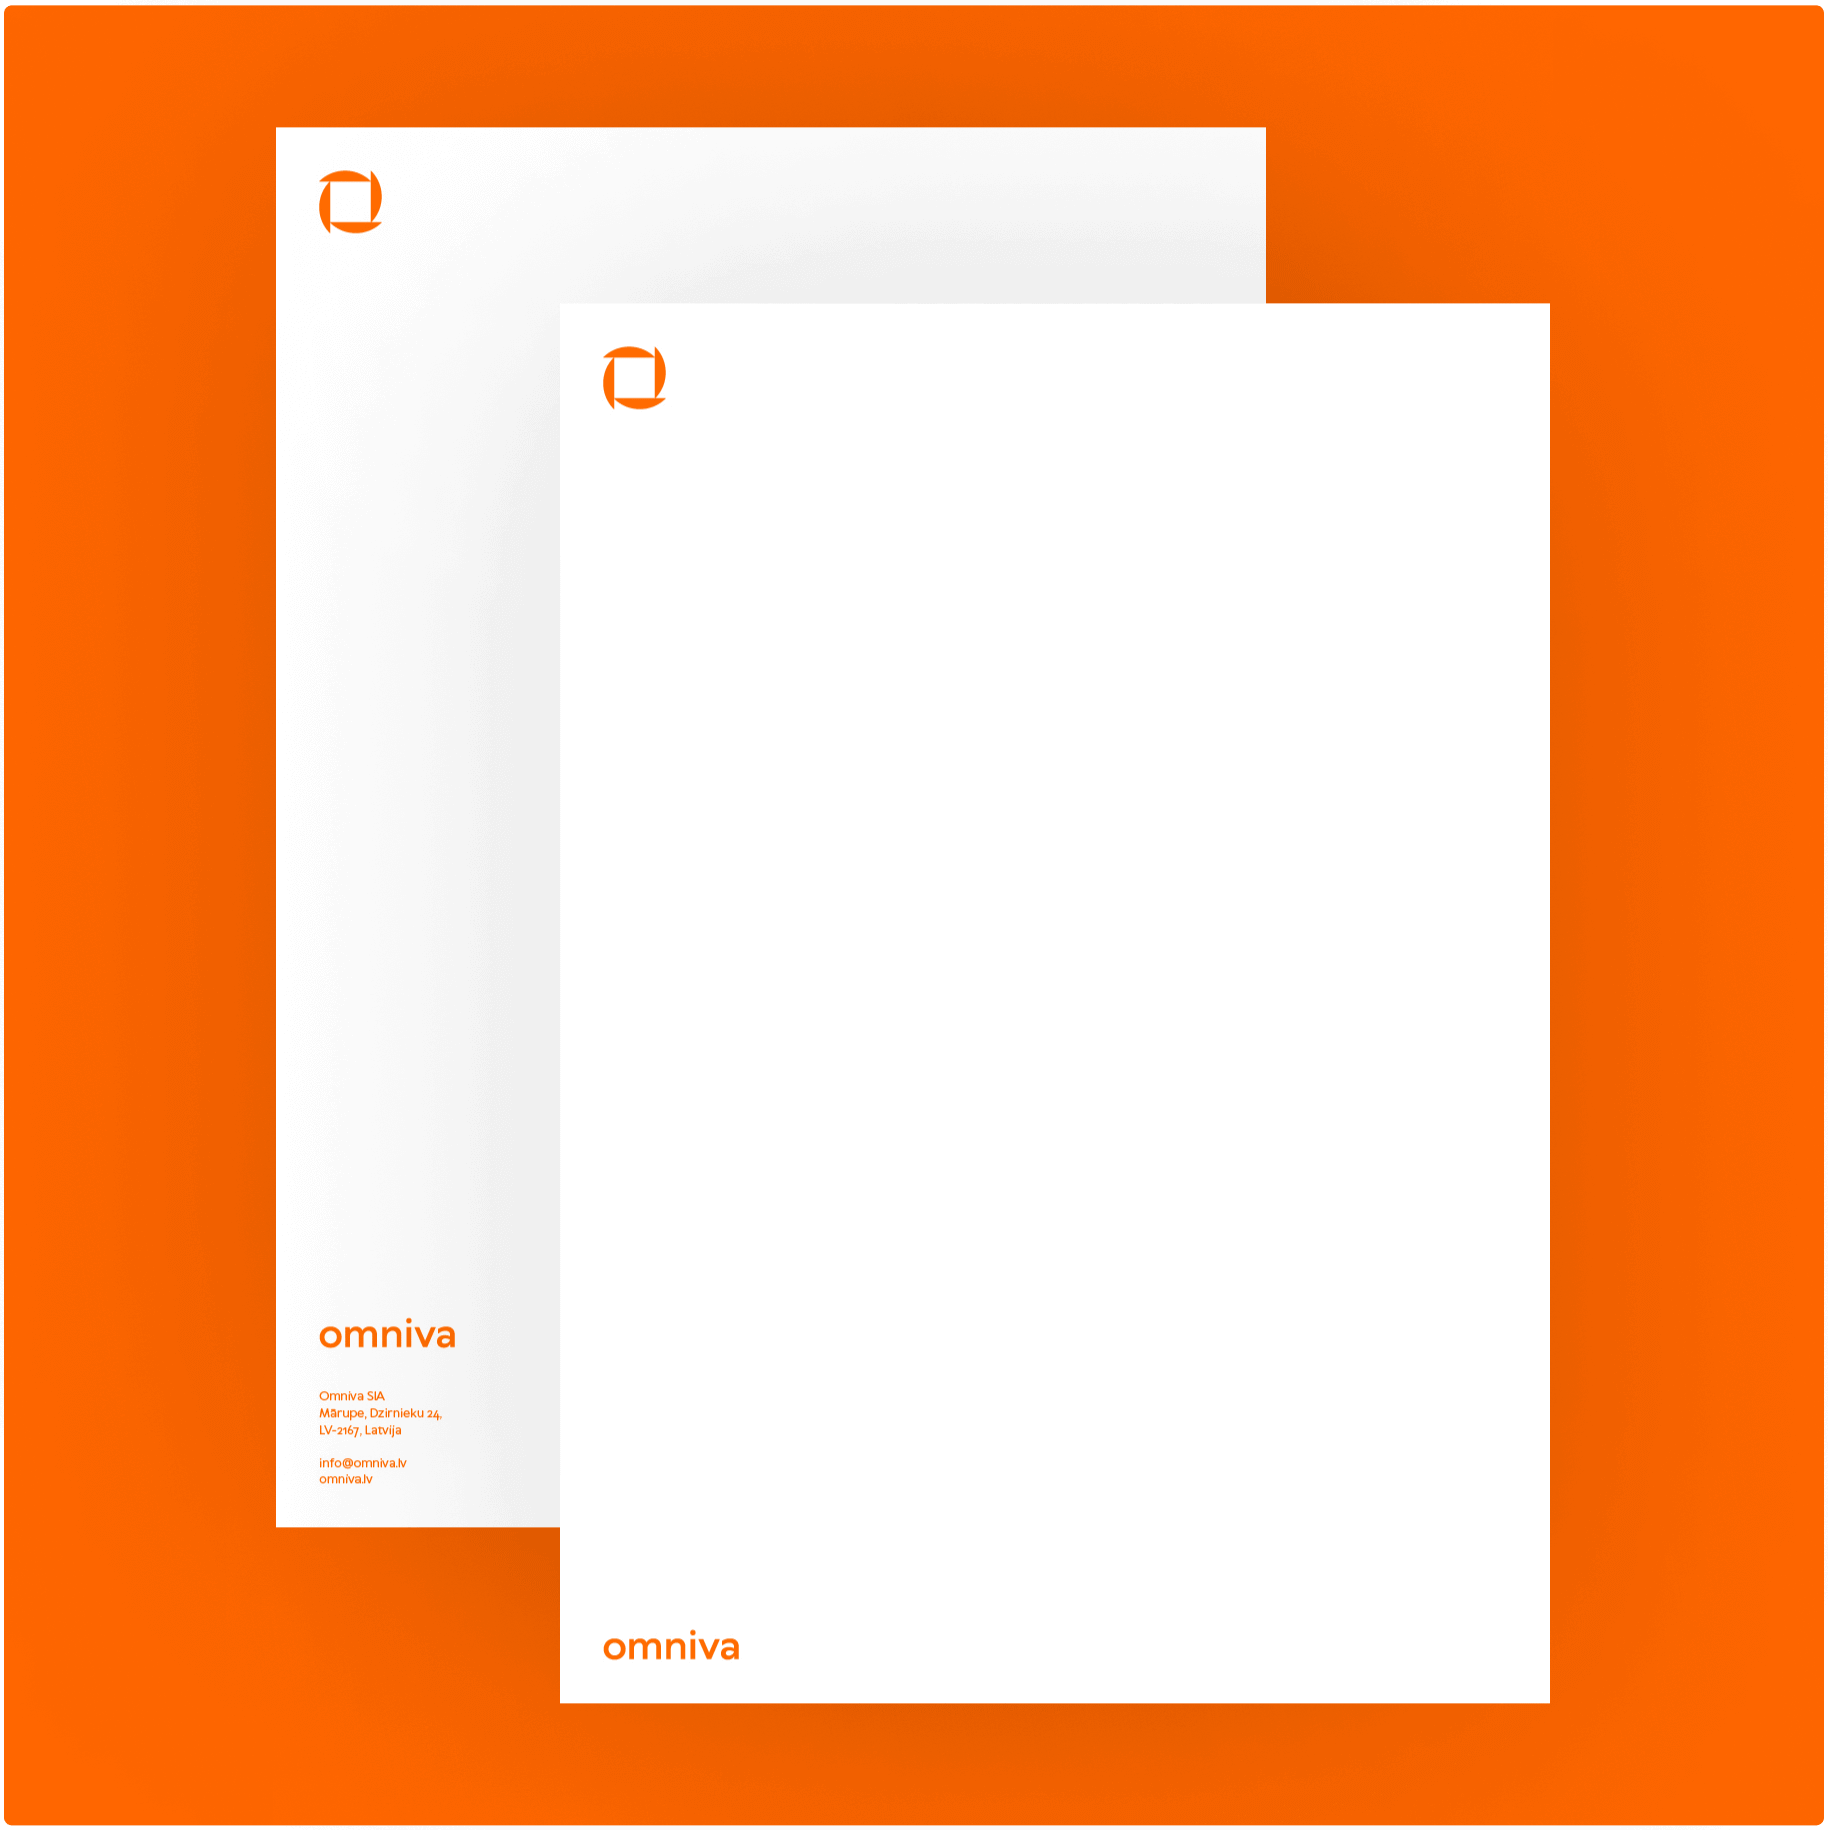 Omniva letterheads in orange